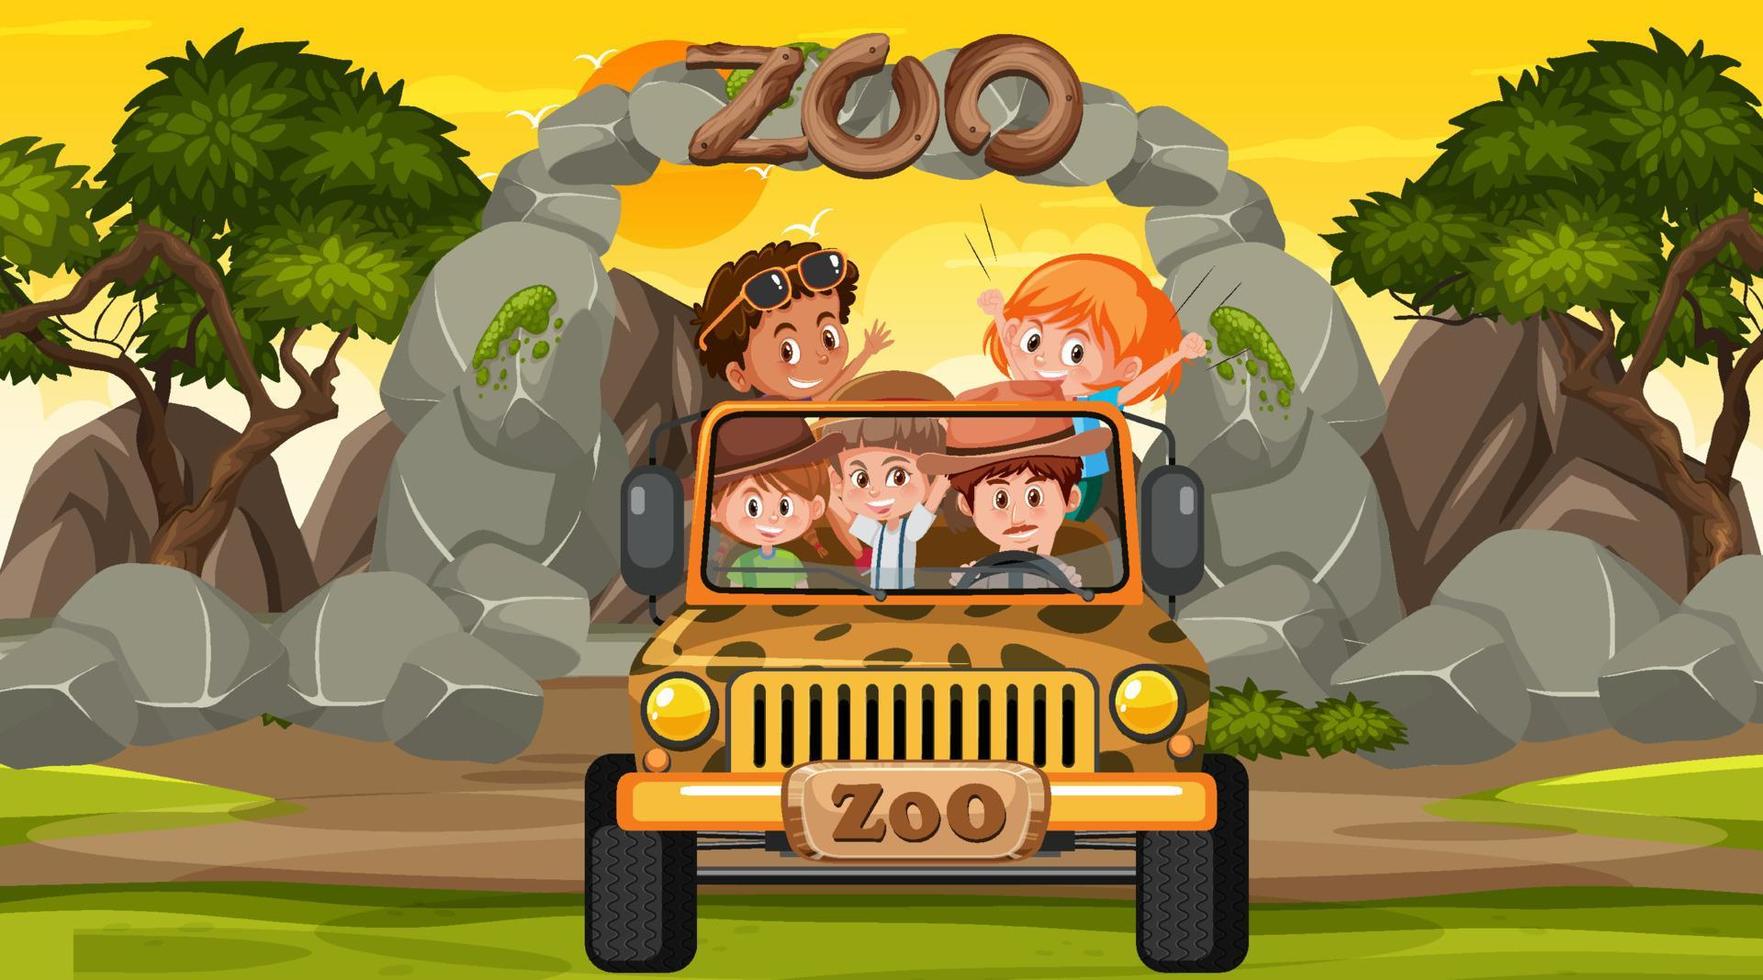 zoo alla scena del tramonto con molti bambini in una jeep vettore